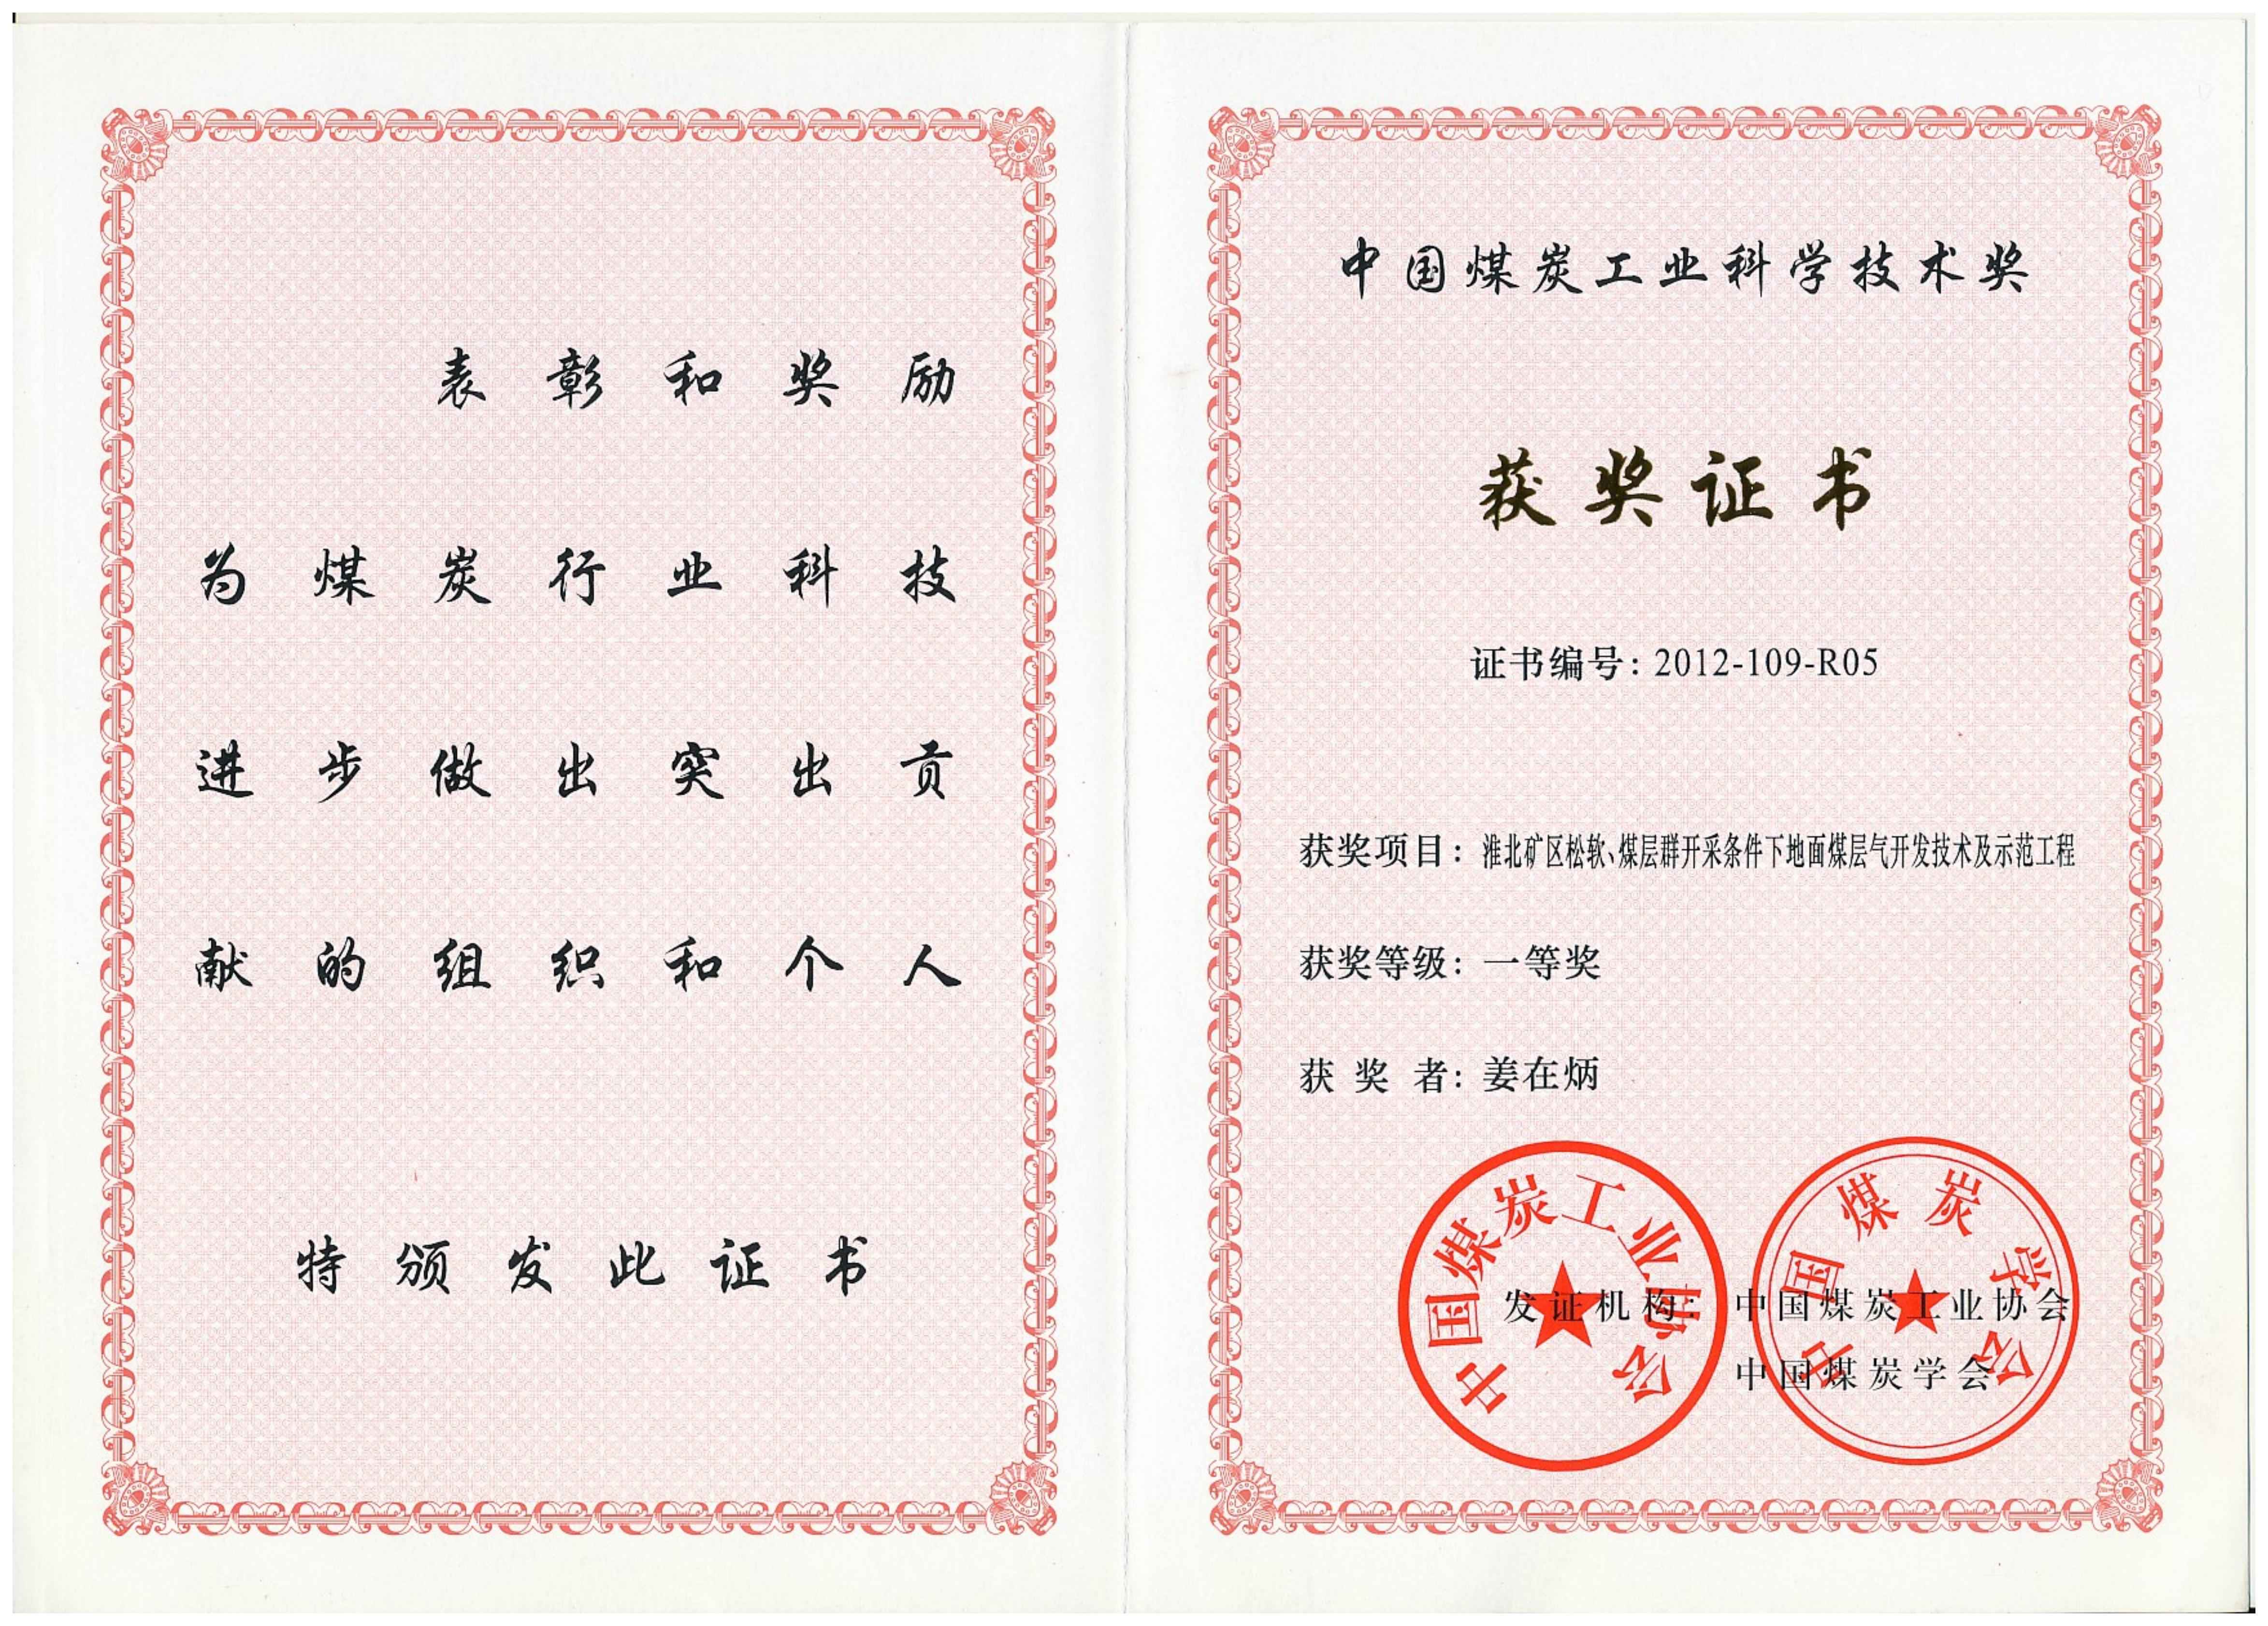 西安研究院-2012年-中国煤炭工业科学技术奖一等奖-排名5-姜在炳_00.jpg